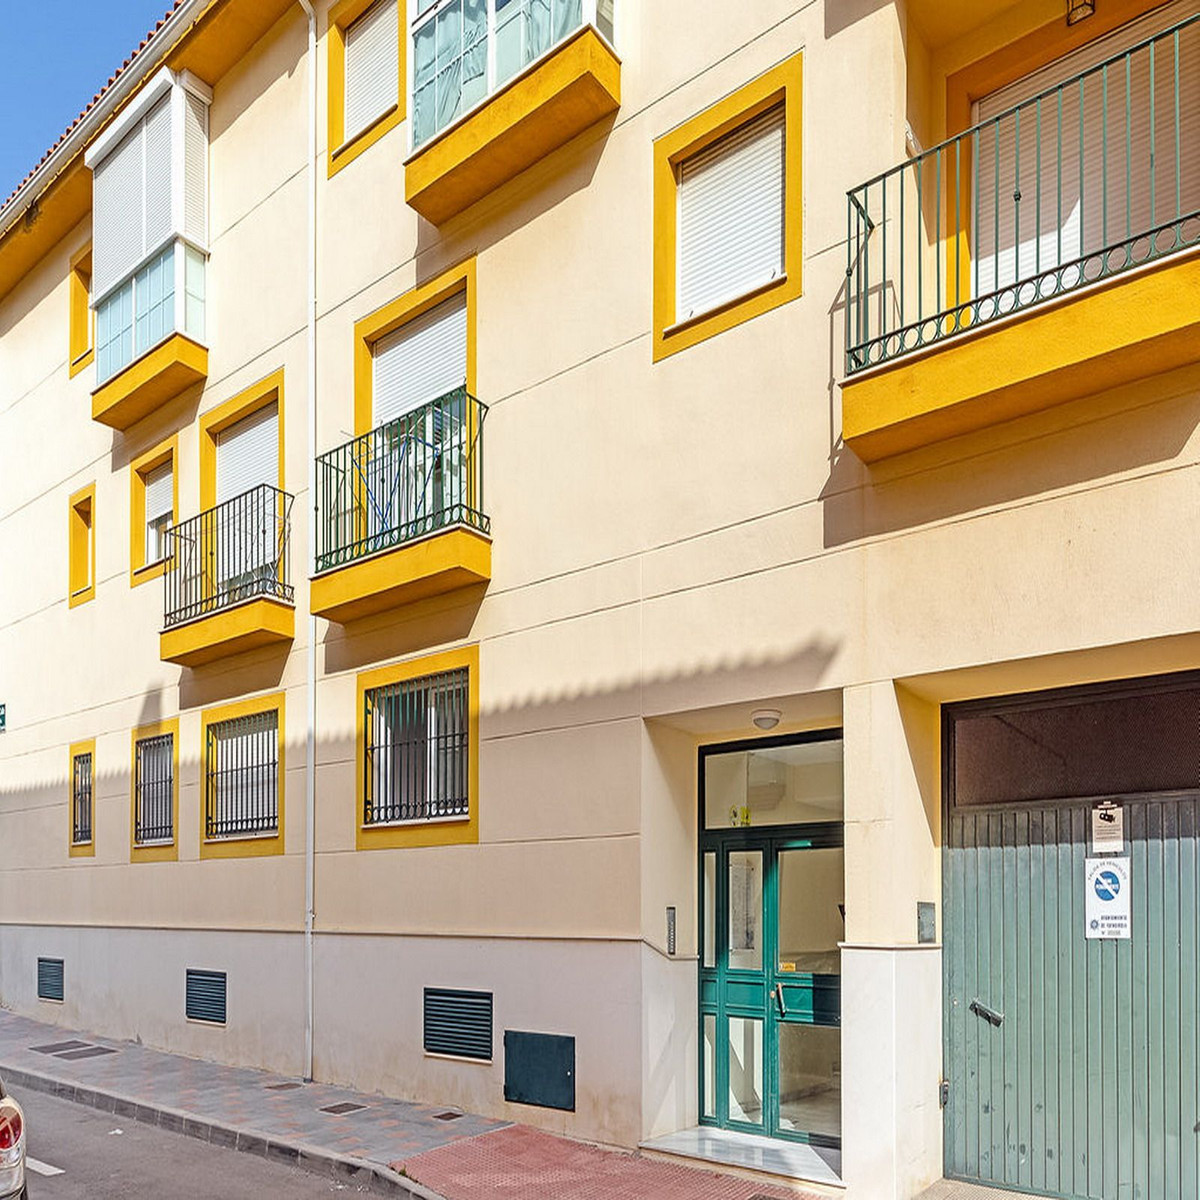 						Apartamento  Planta Baja
													en venta 
																			 en Los Boliches
					